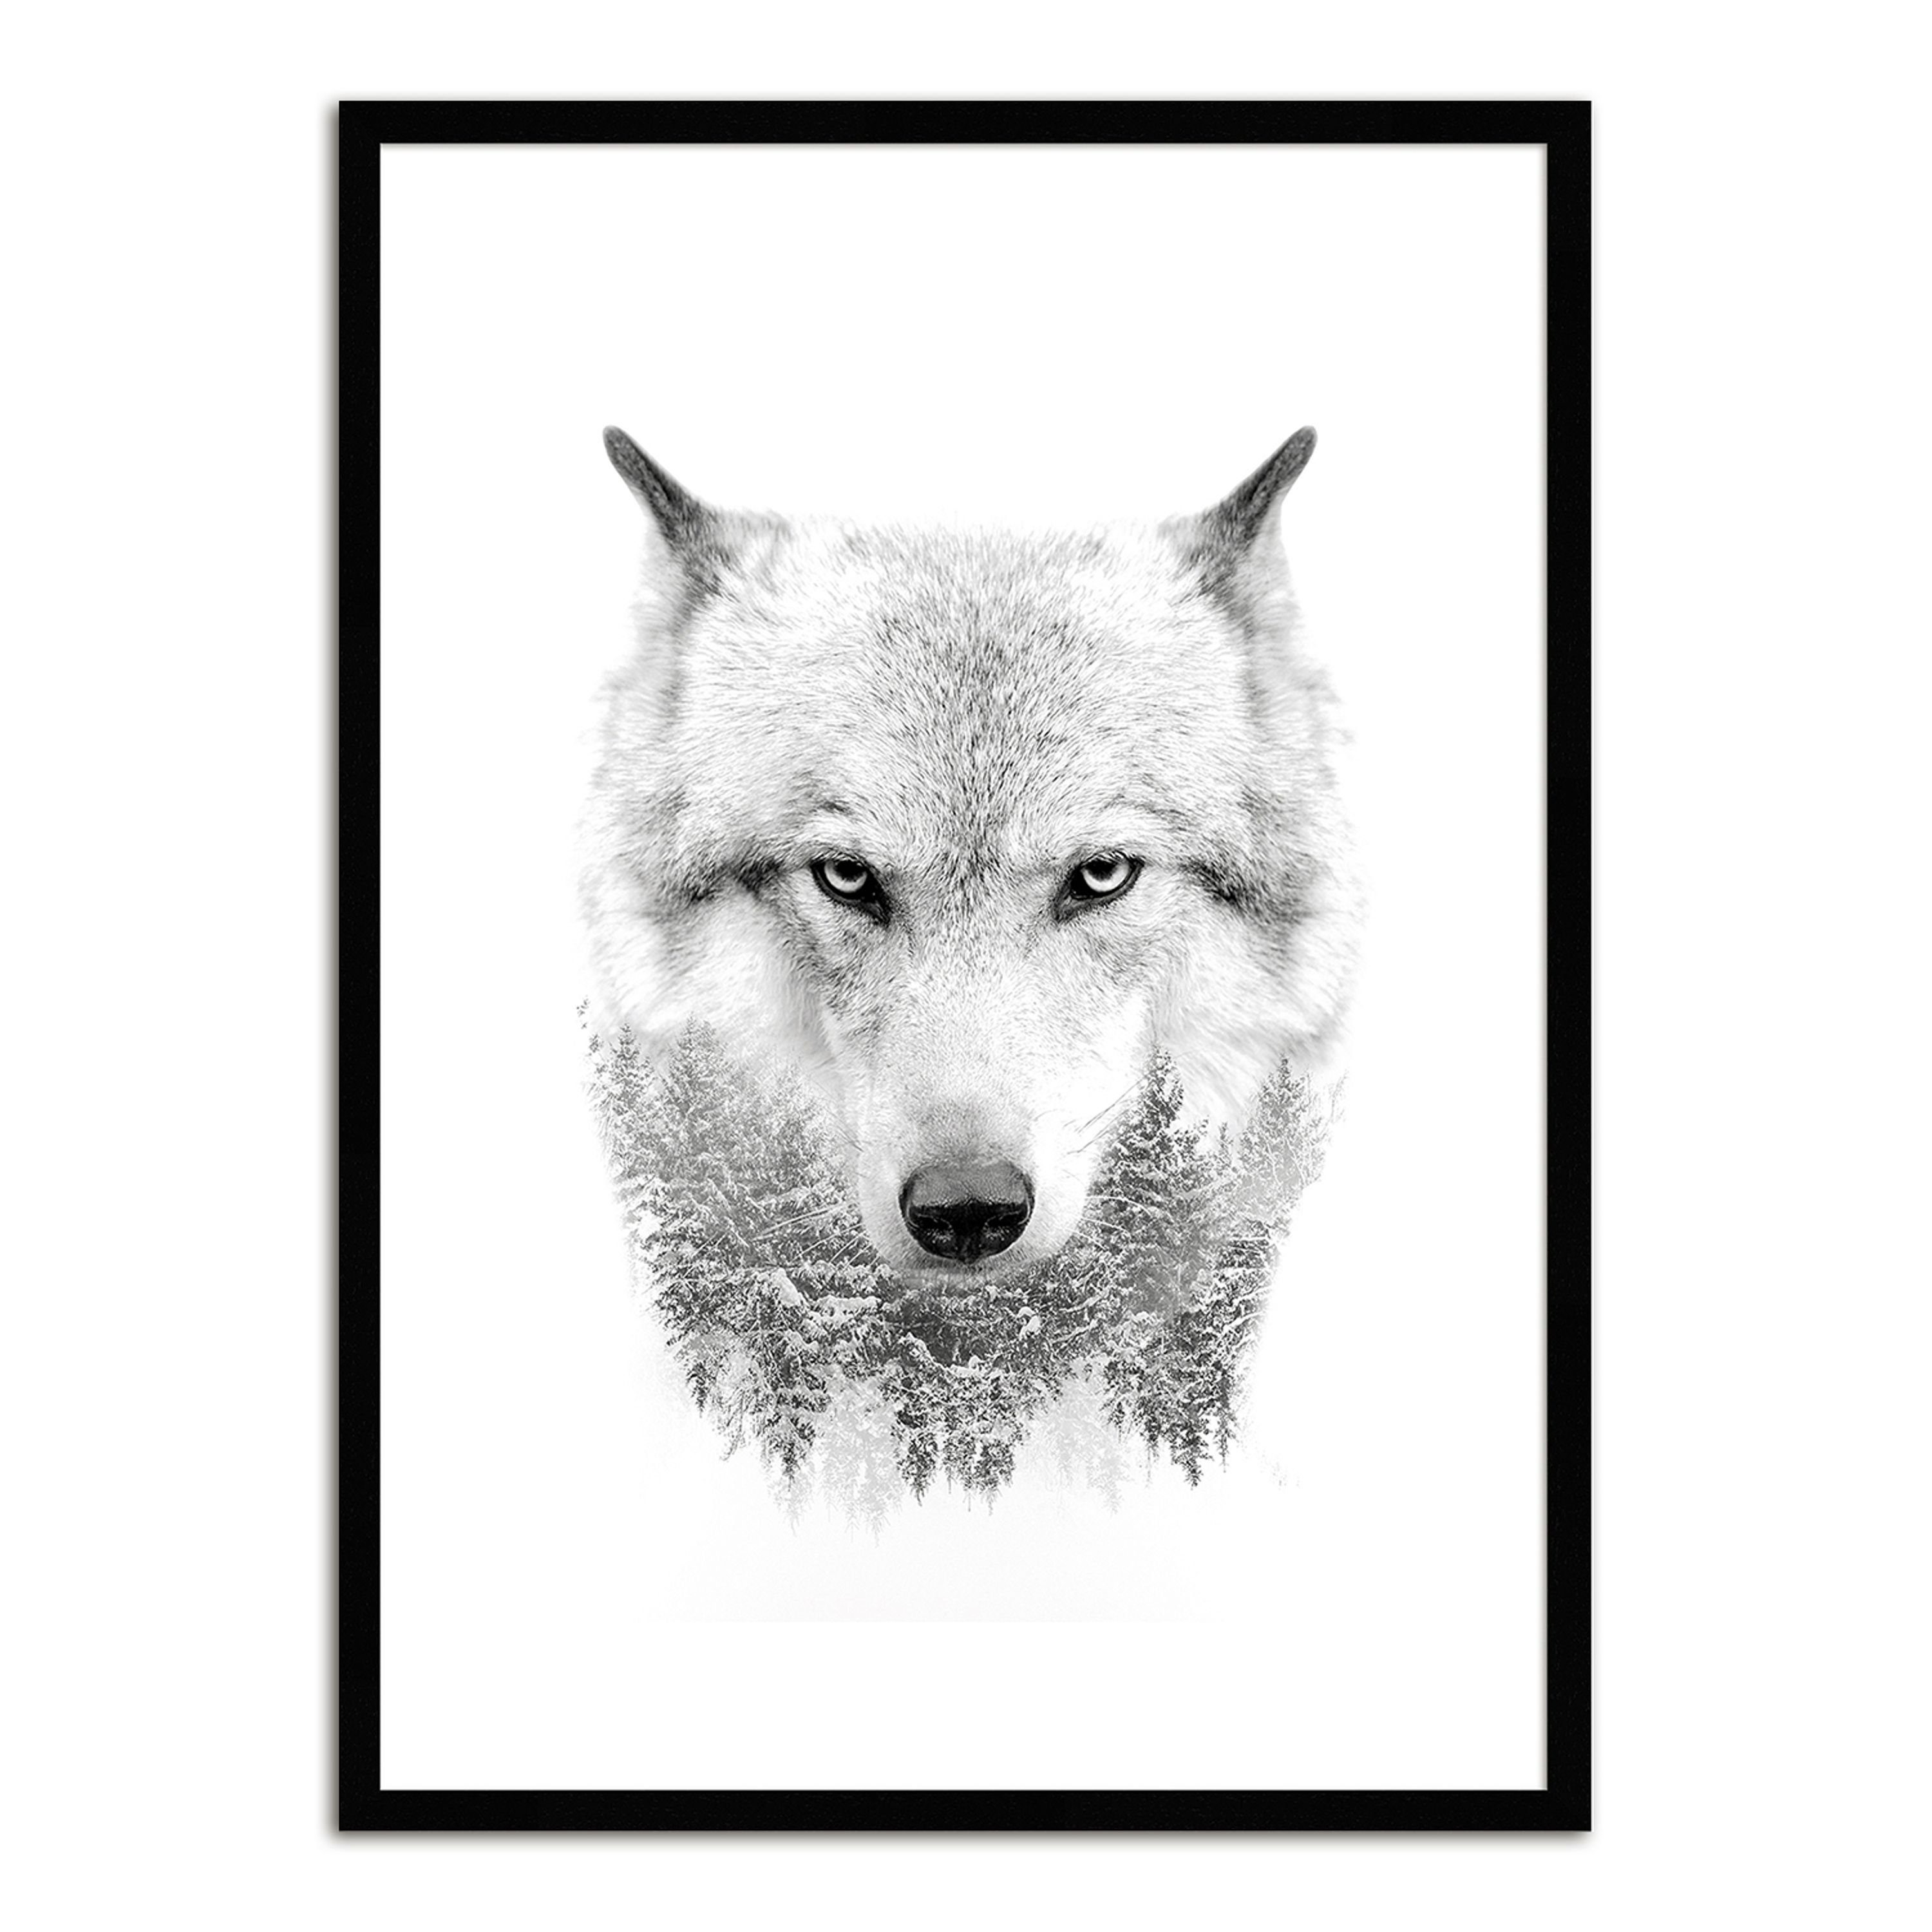 Super günstiger Neuartikel artissimo Bild / mit gerahmt Rahmen Wolf Holz-Rahmen Design-Poster Wolf, Bild 51x71cm Wandbild / mit